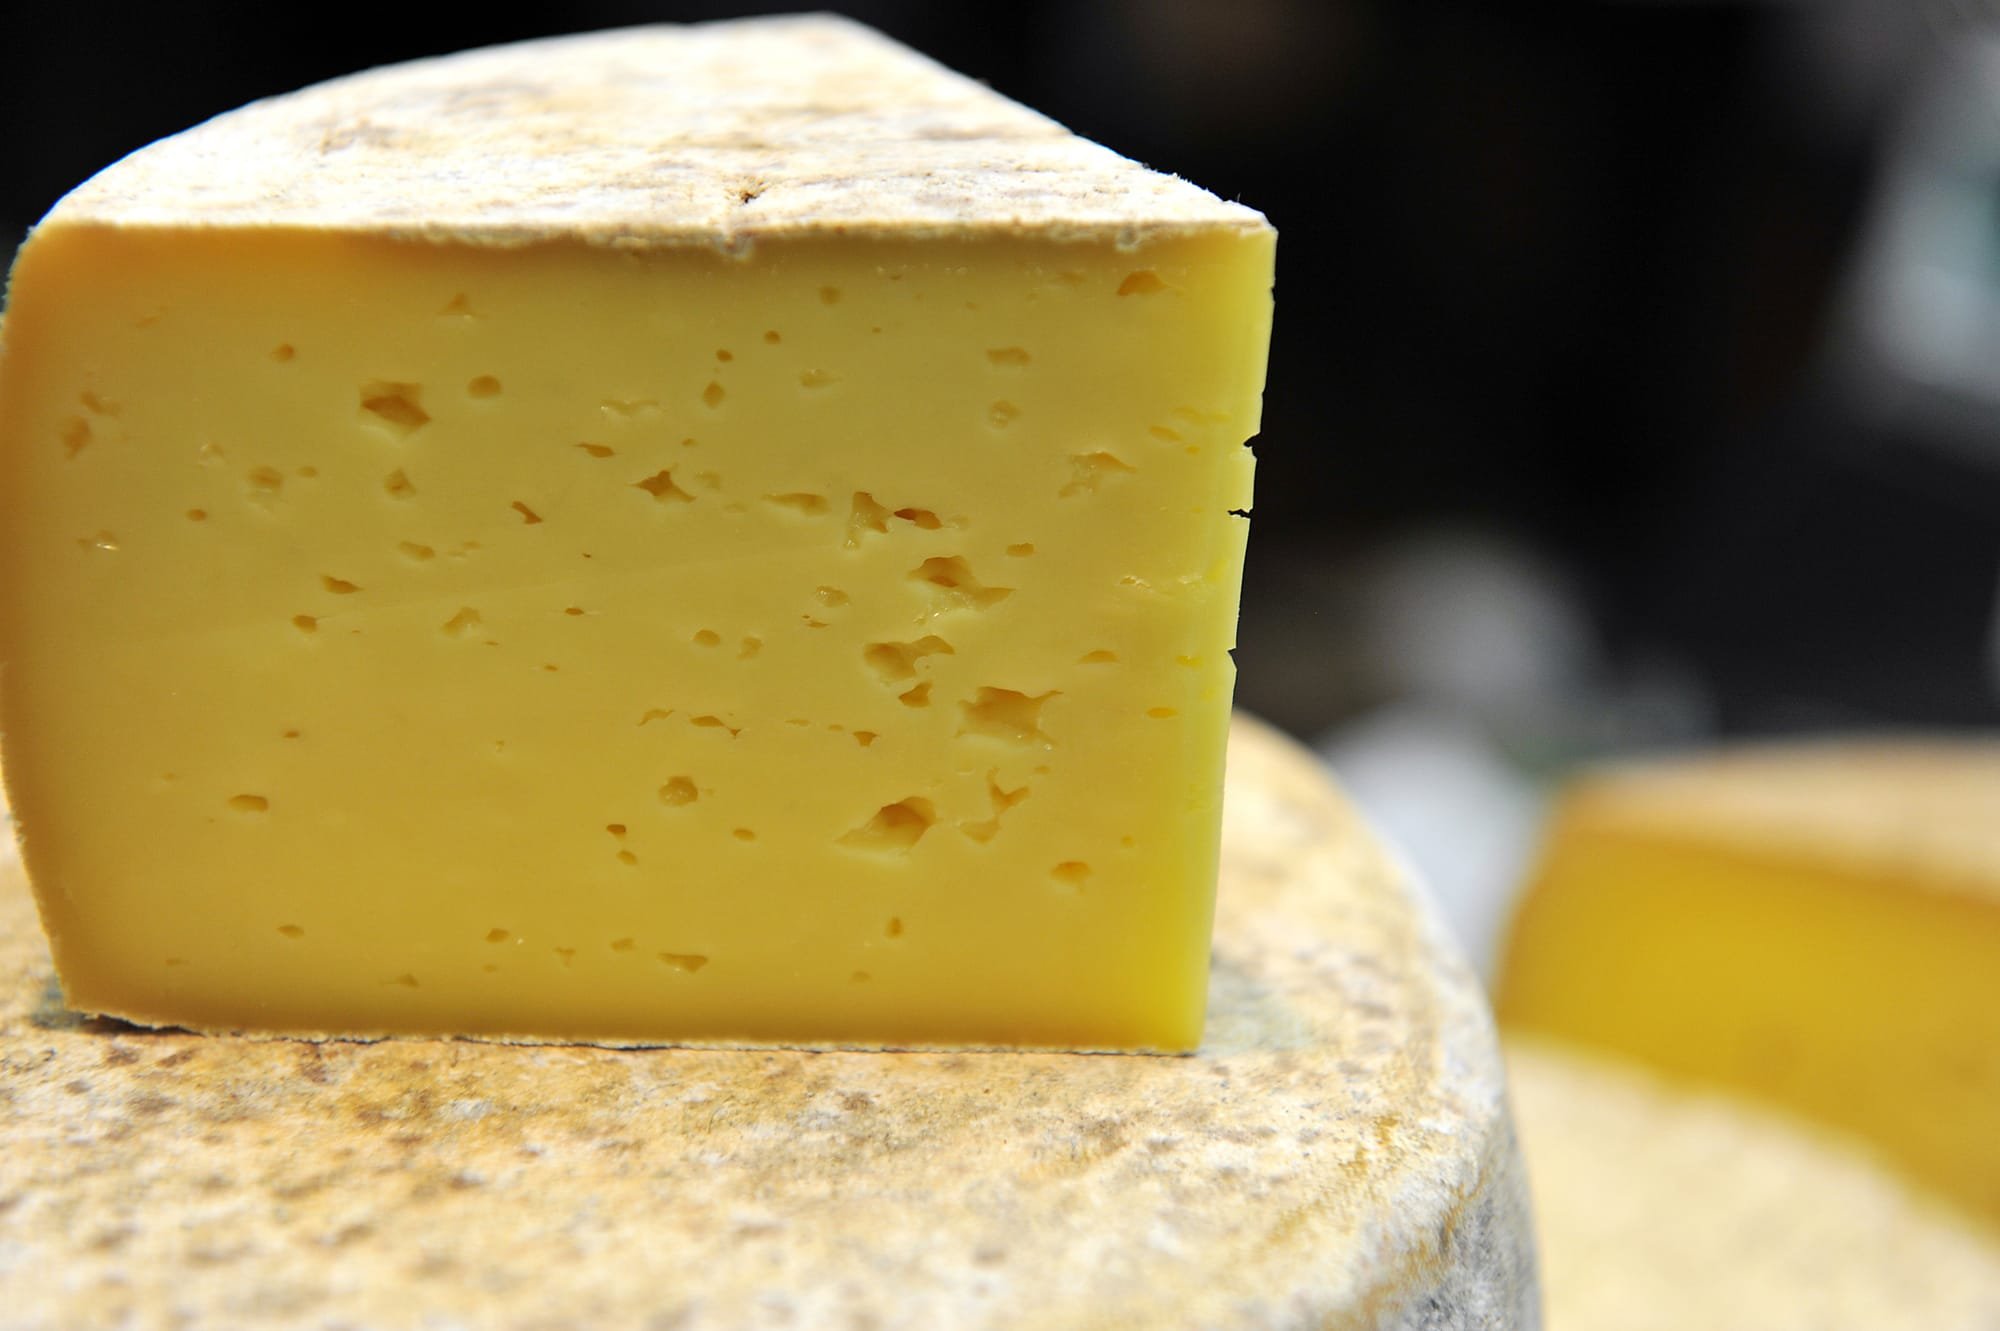 خبير تغذية يحذر من "الجبن الرومي": يسبب الجلطات وتصلب الشرايين